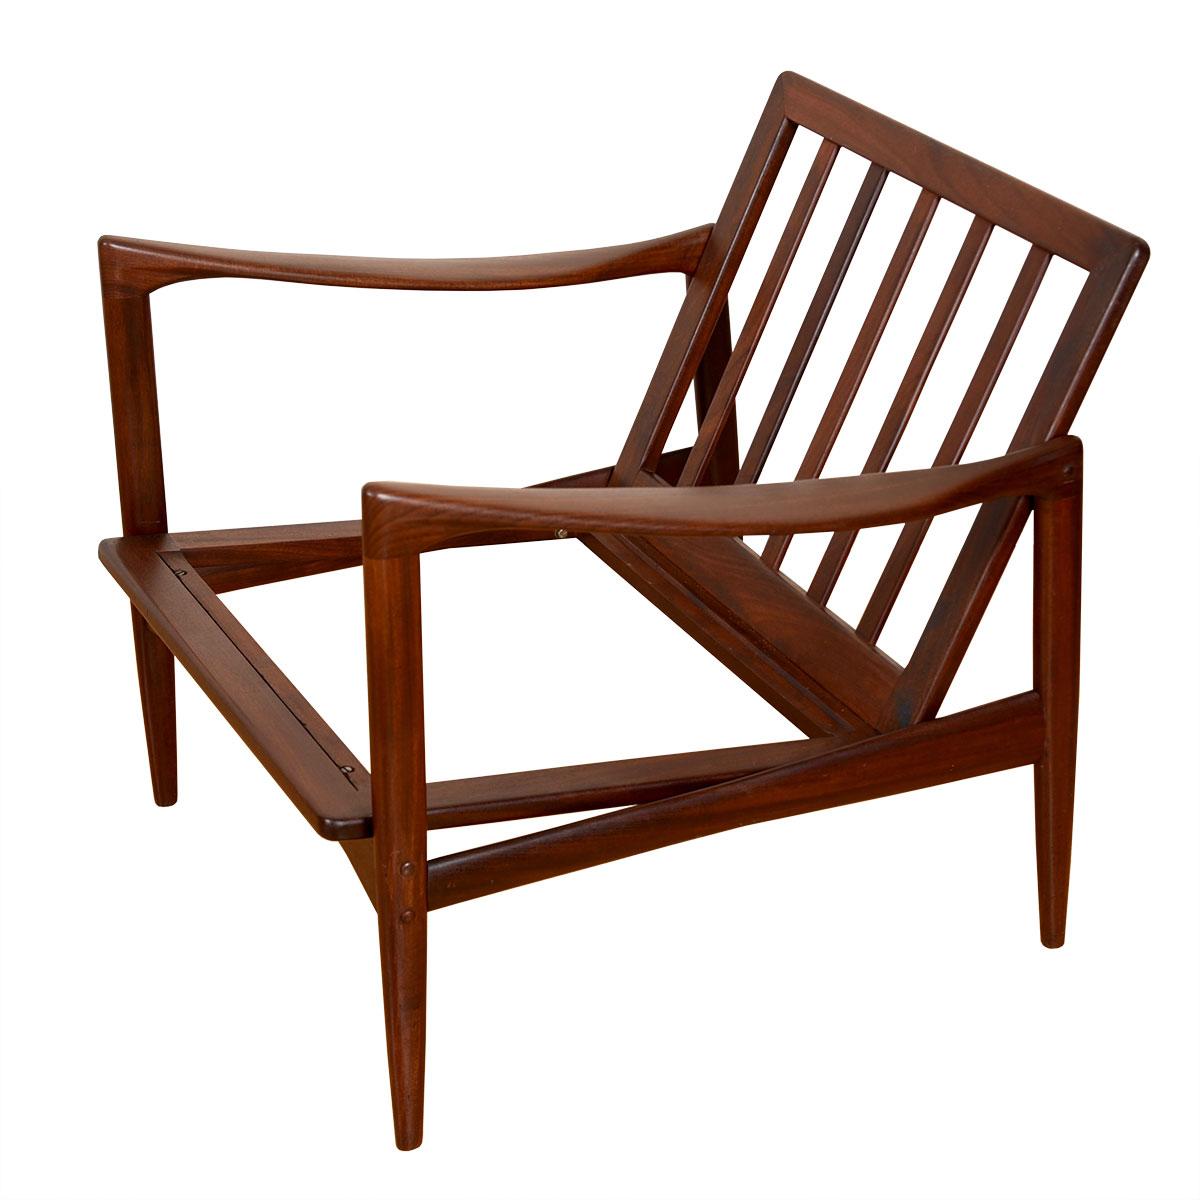 La caractéristique principale de cette chaise est la forme et l'angle de ses accoudoirs - regardez ce profil dynamique. Au-delà du style, il offre le confort suprême qui fait la renommée des grands maîtres danois du design.
Ib Kofod-Larsen, très